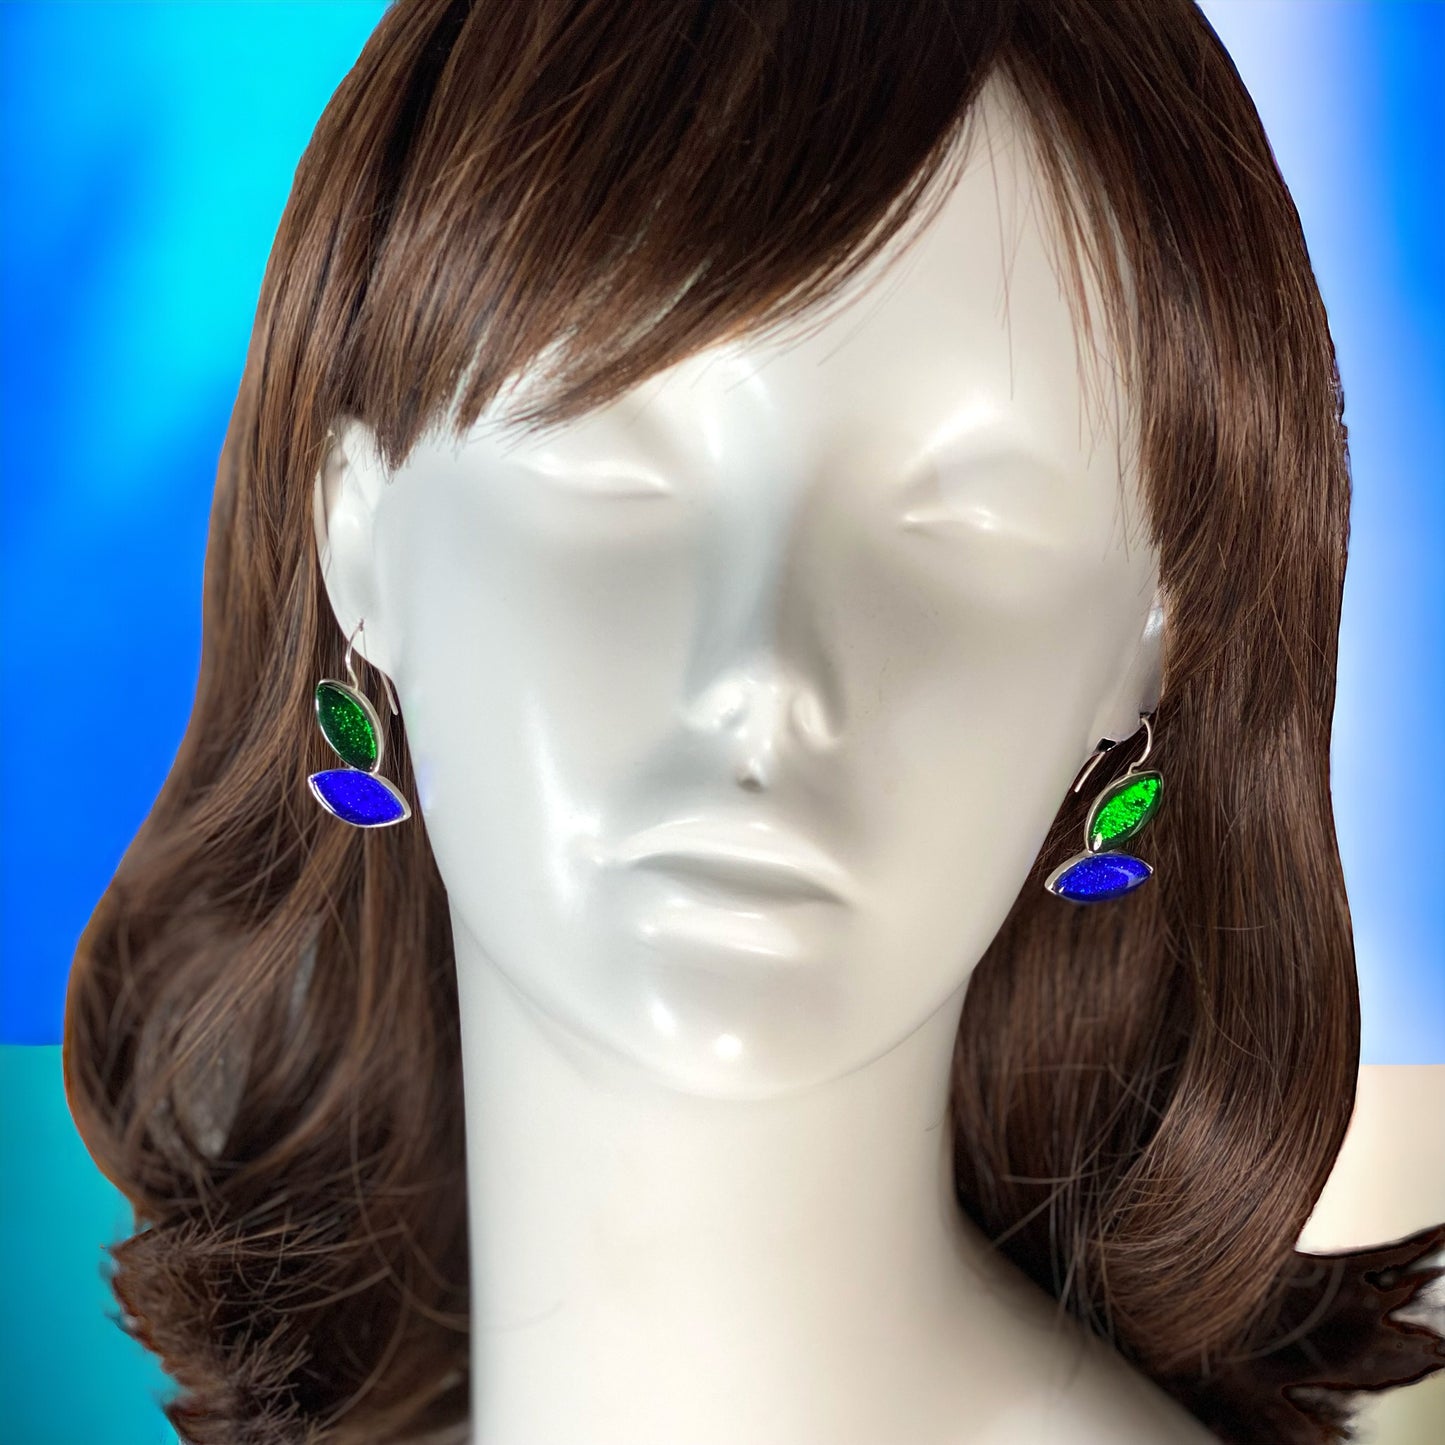 MCM Leaf Earrings in Emerald & Cobalt